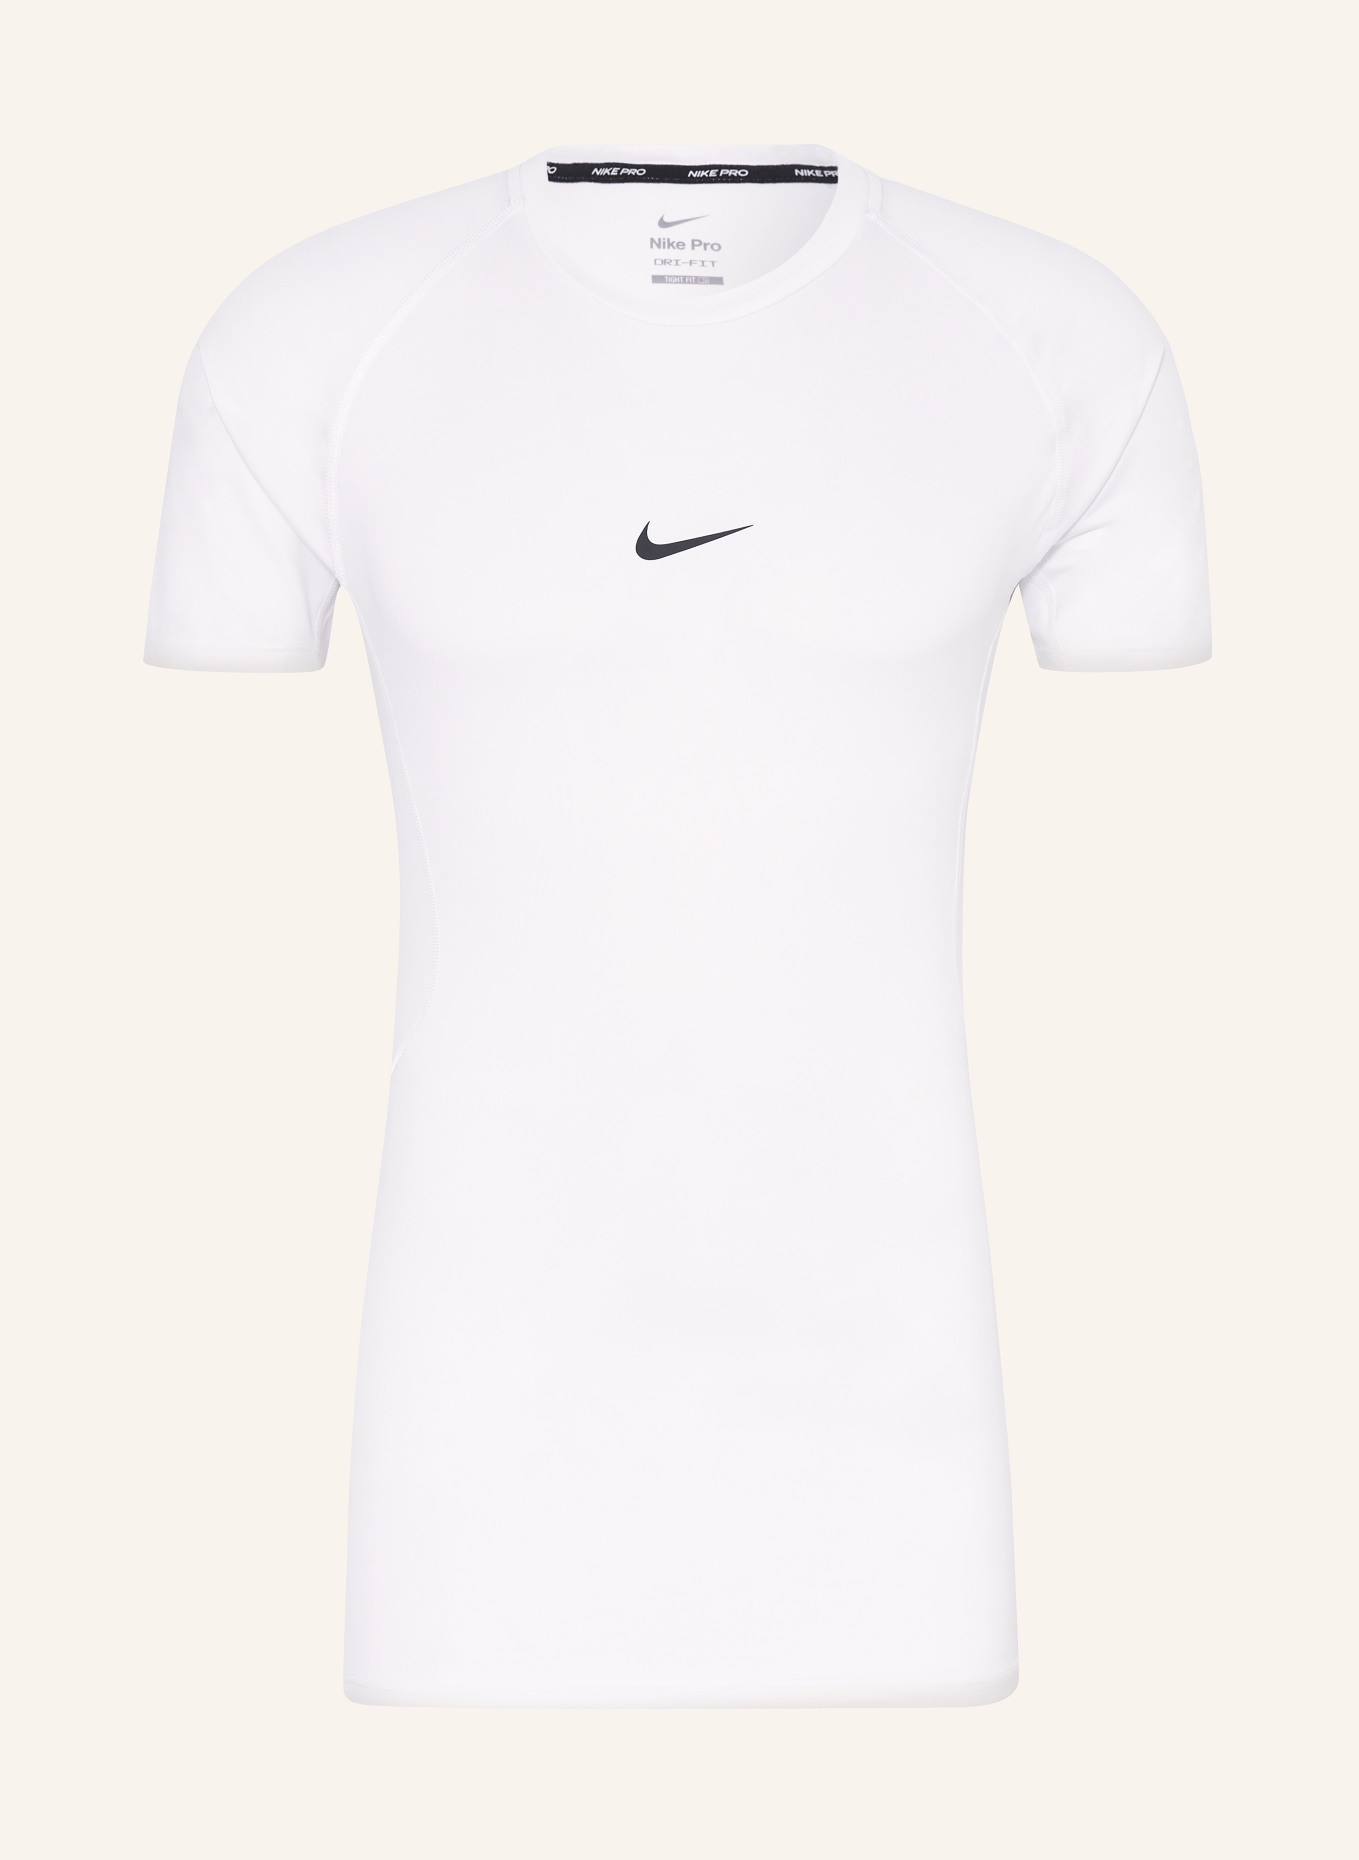 Nike T-shirt PRO, Color: WHITE (Image 1)